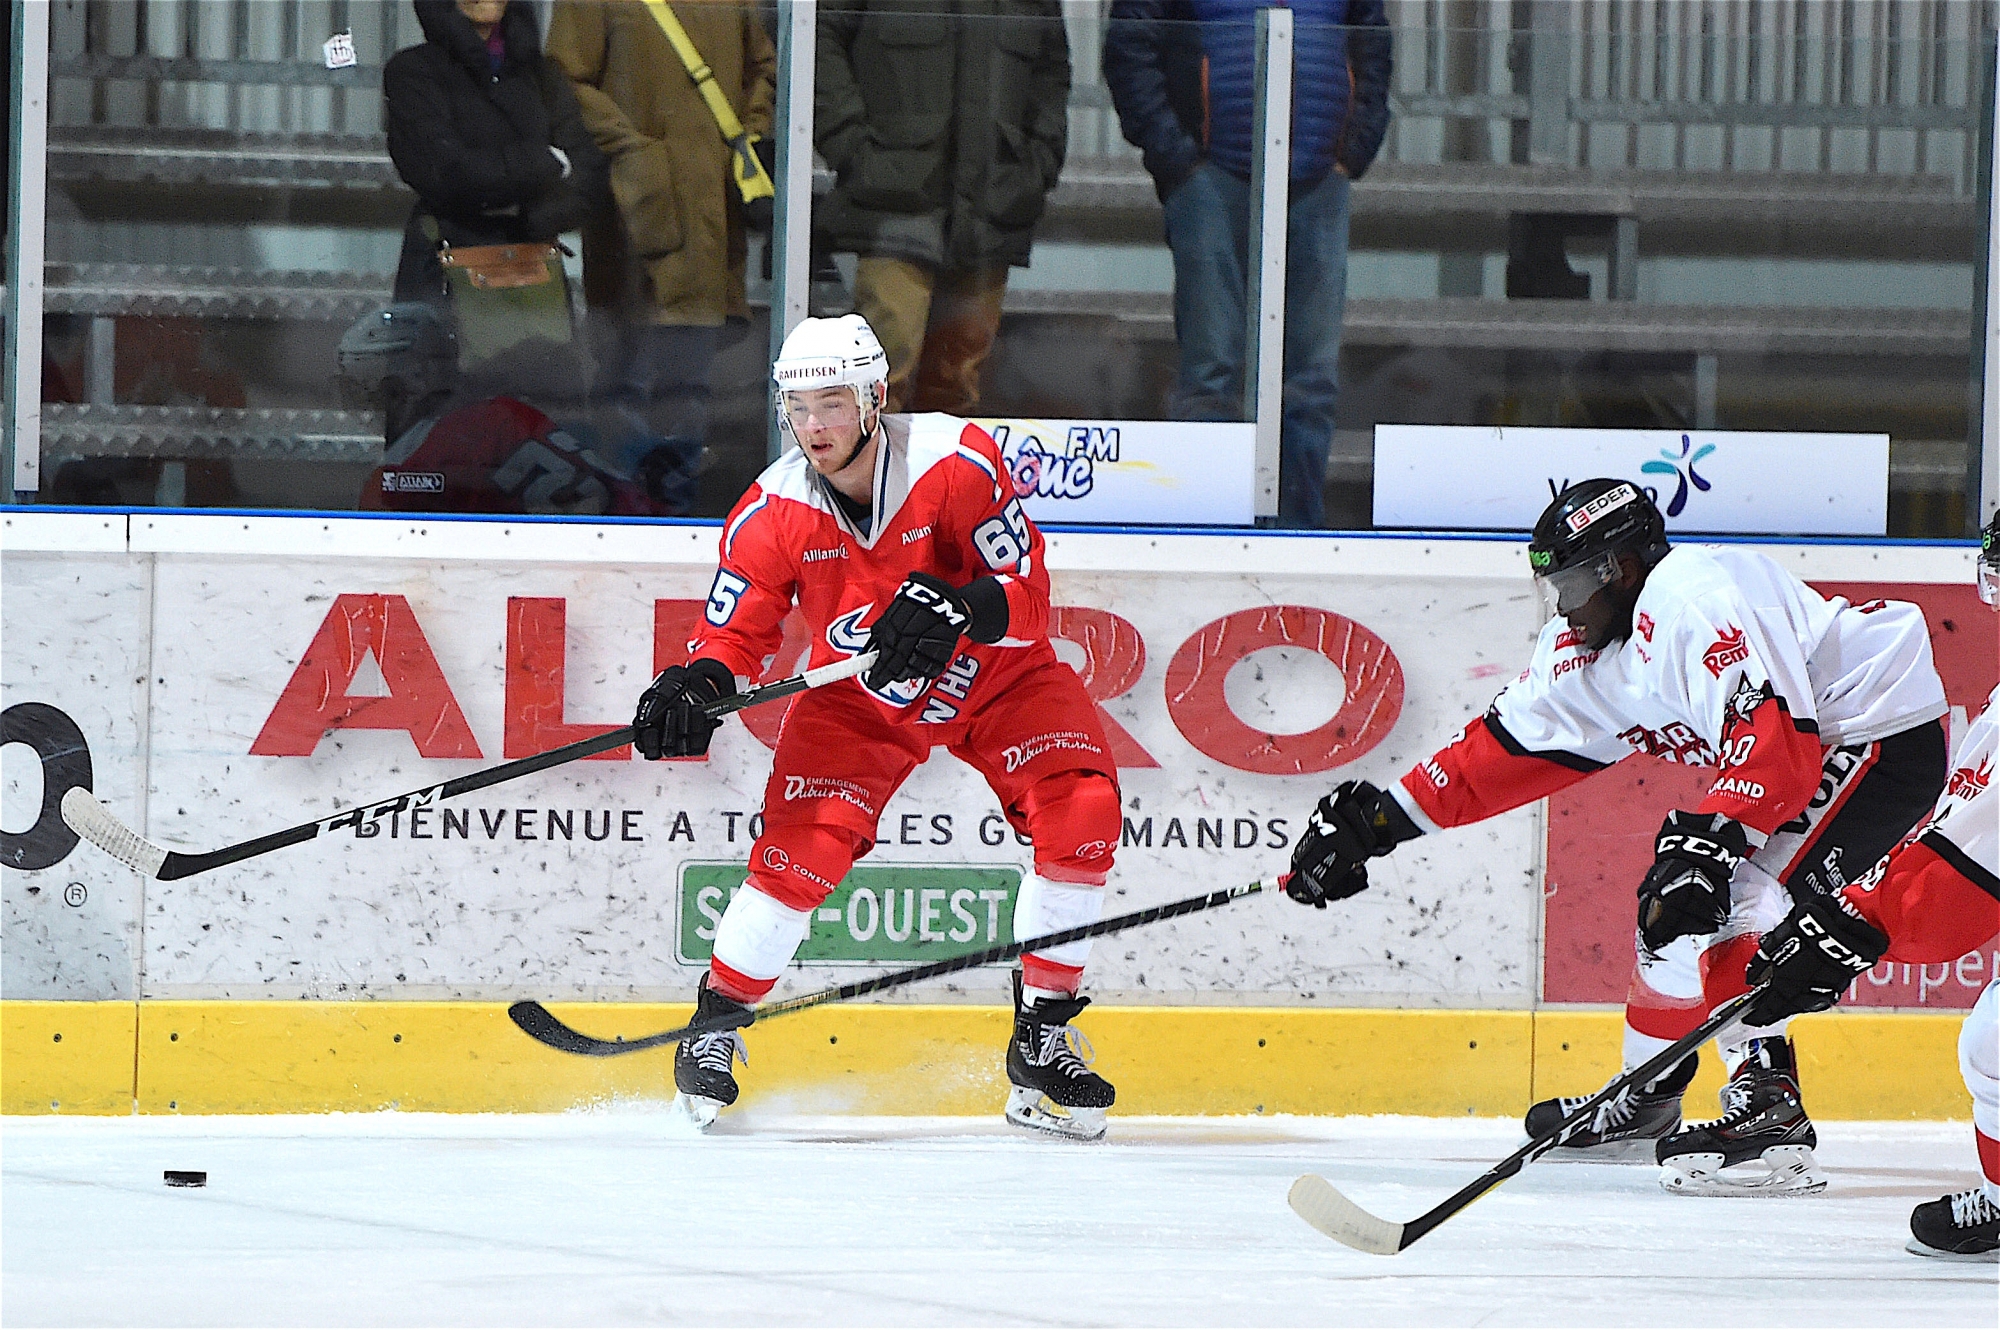 Le HC Sion est très impressionnant sur la glace. Il est en tête en Swiss Regio League depuis le début de la saison. En coulisses, ça bouge pas mal aussi.